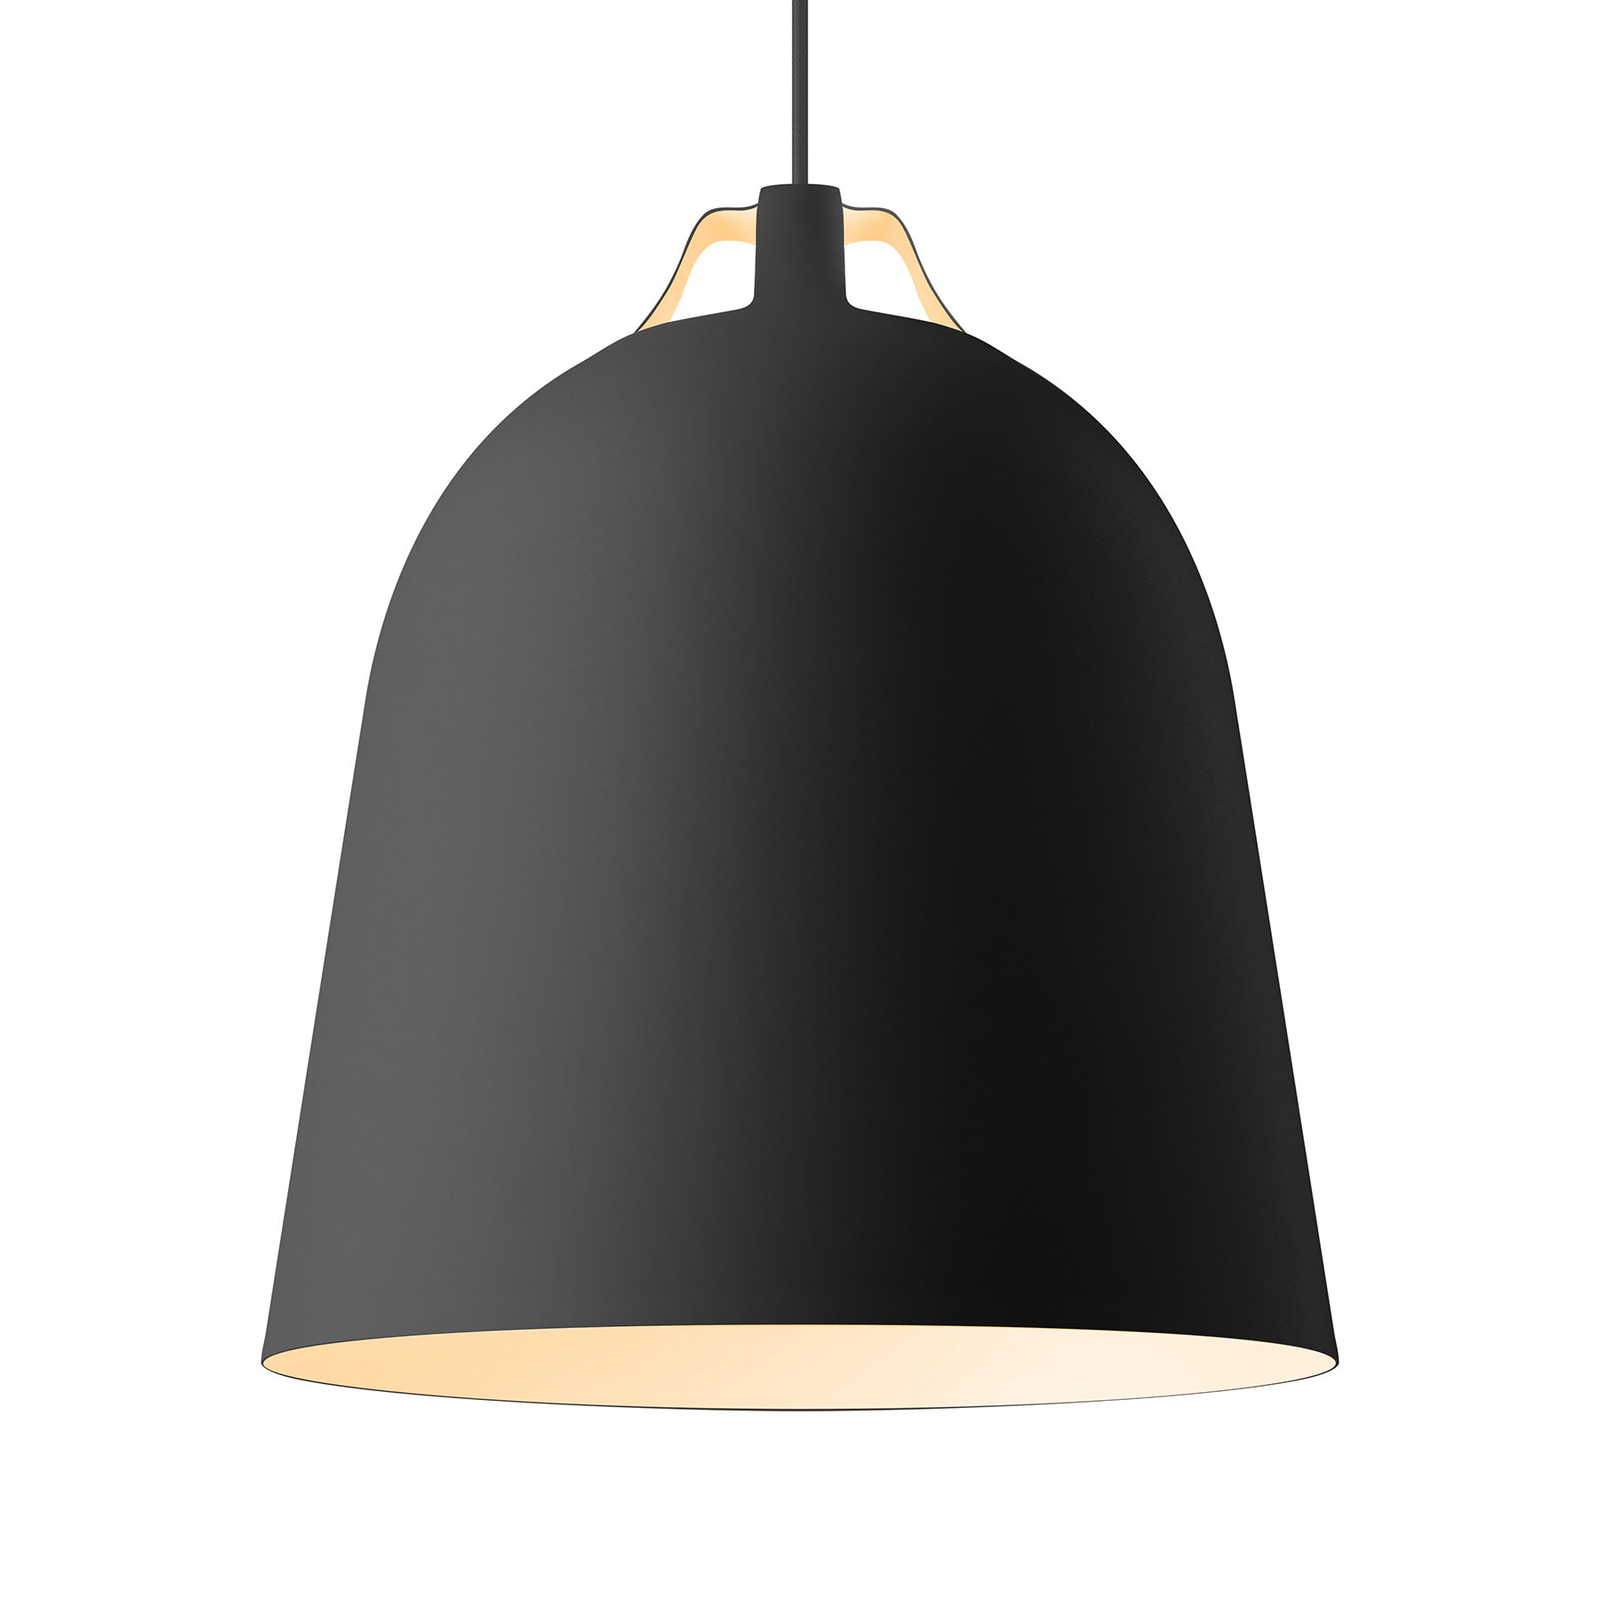 EVA Solo Clover hanglamp Ø 35cm, zwart